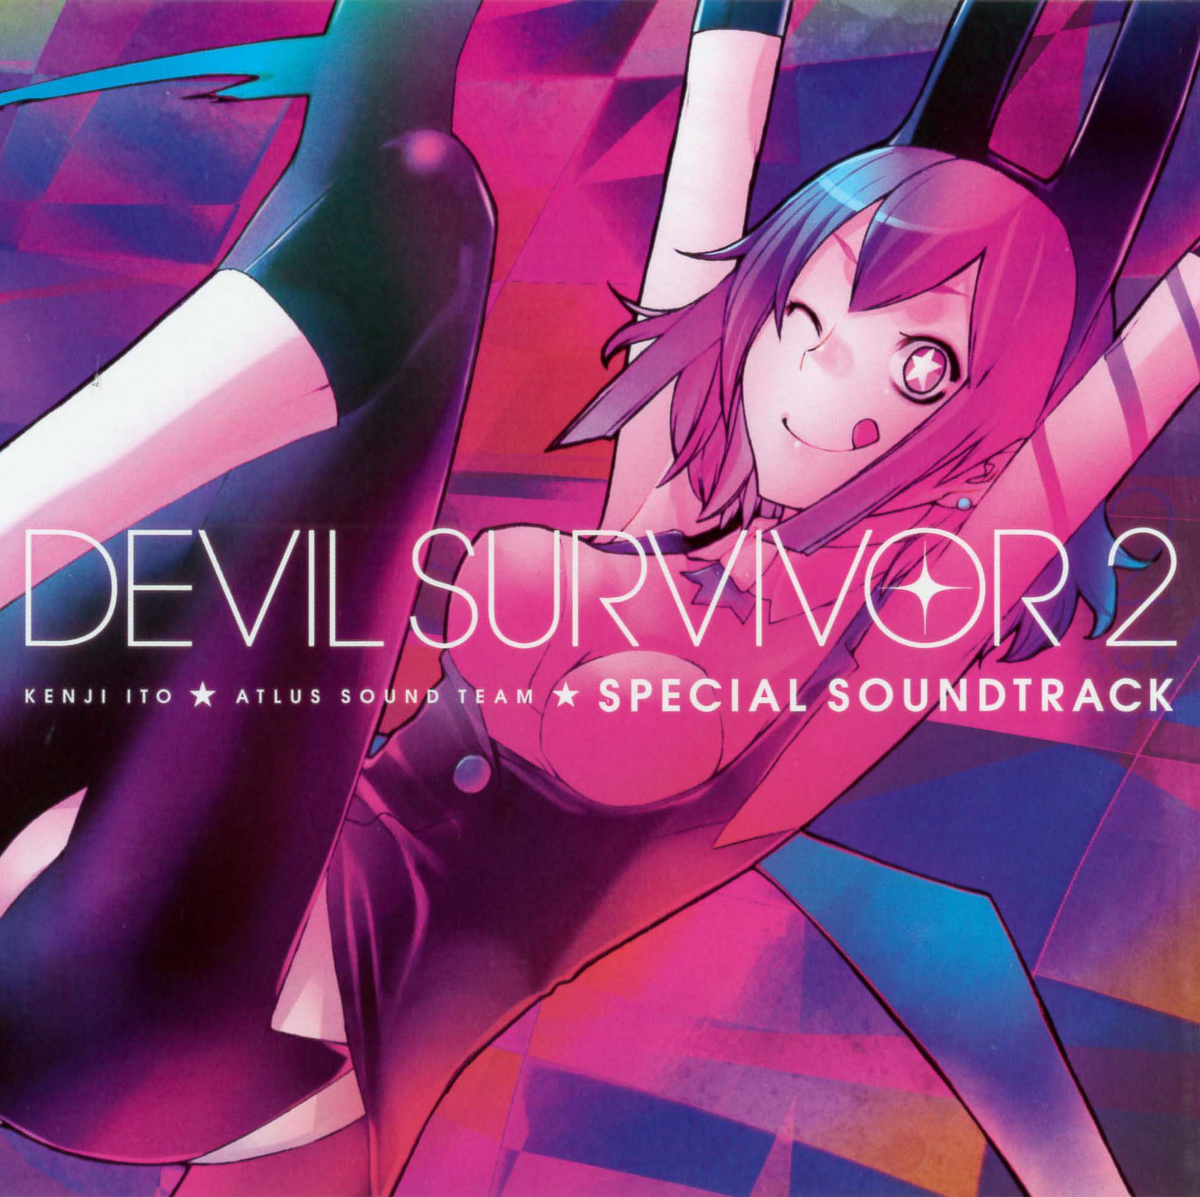 devil-survivor-2-special-soundtrack-wiki-megami-tensei-fandom